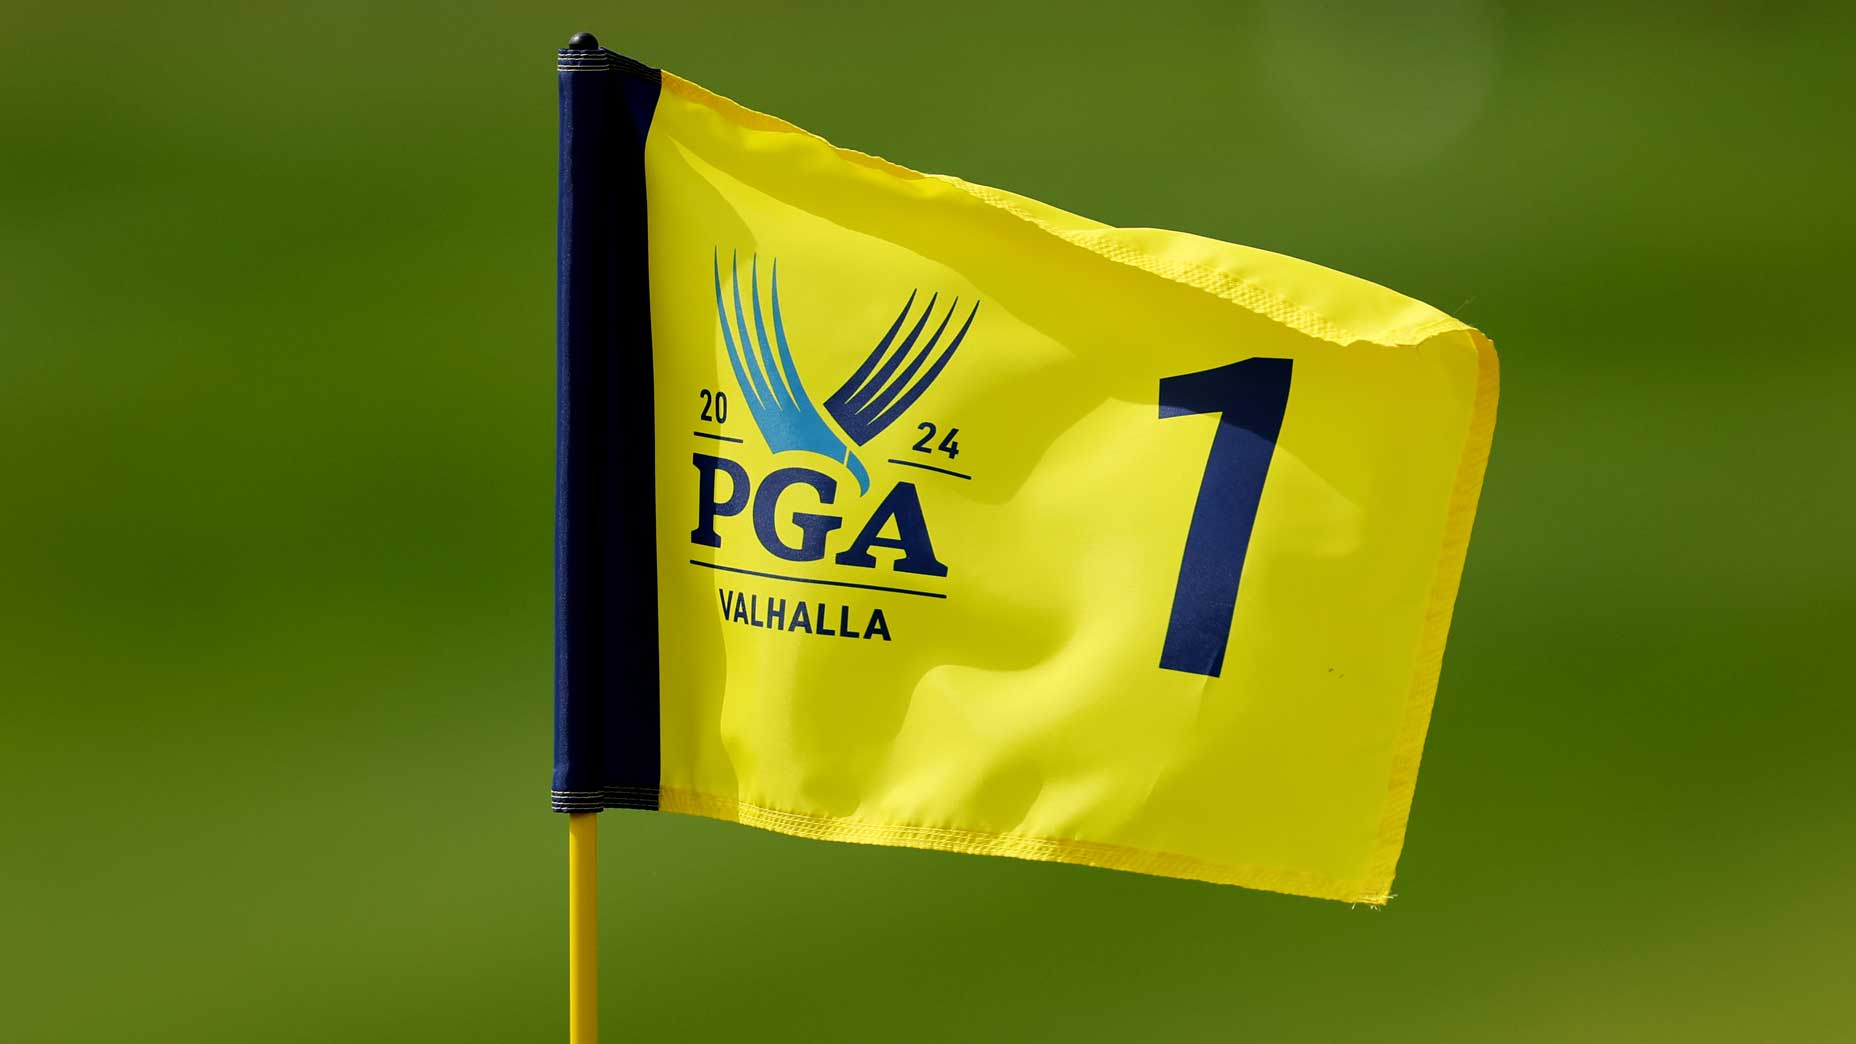 A close-up image of a yellow 2024 PGA Championship flag at Valhalla